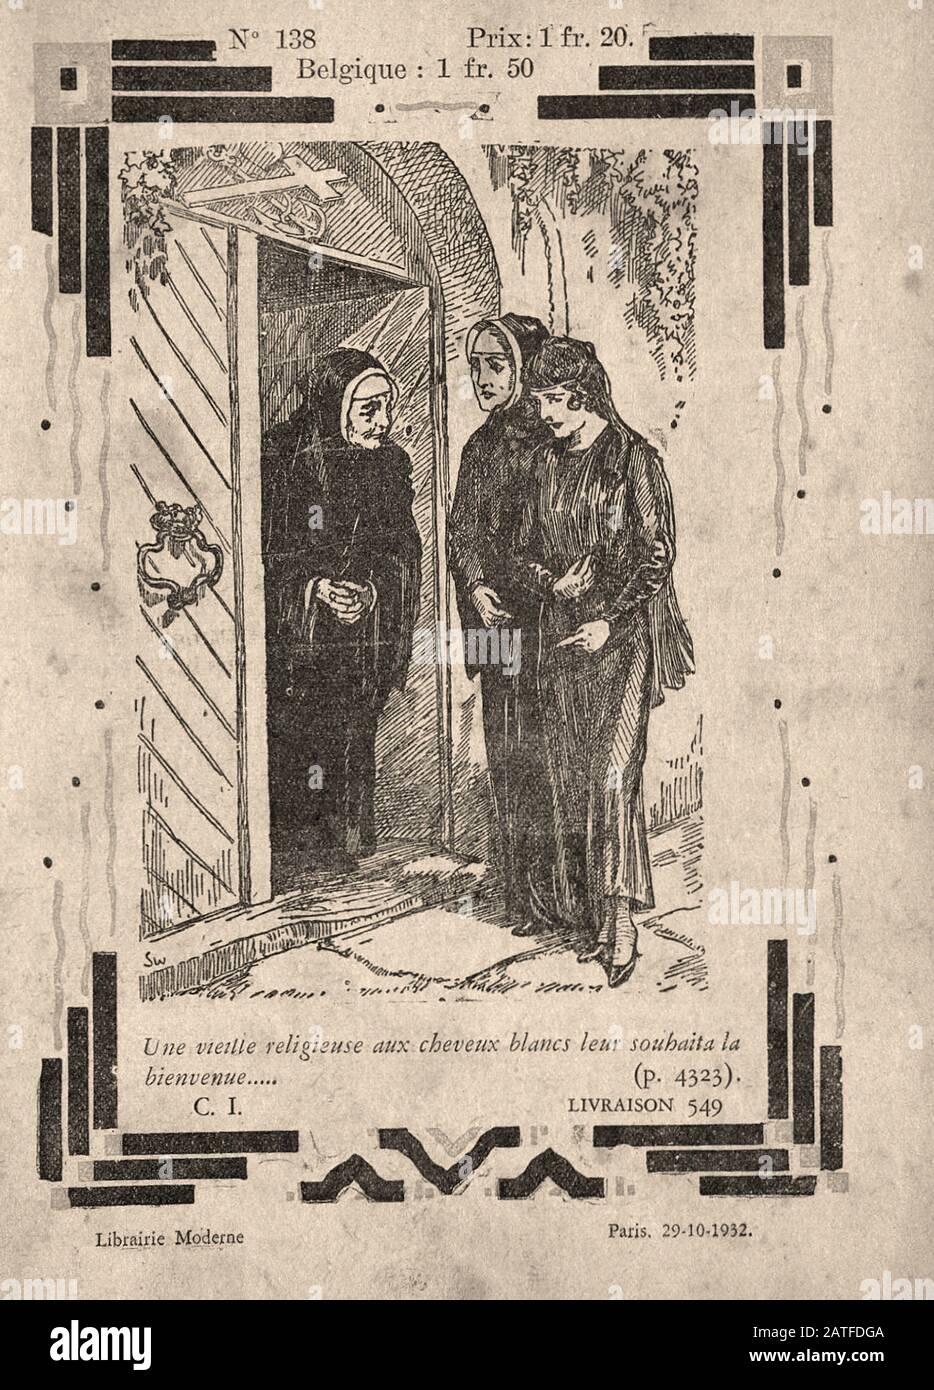 El caso Dreyfus 1894-1906 - Le Calvaire d'un inocente, no. 138 - anónimo francés libro ilustrado Foto de stock